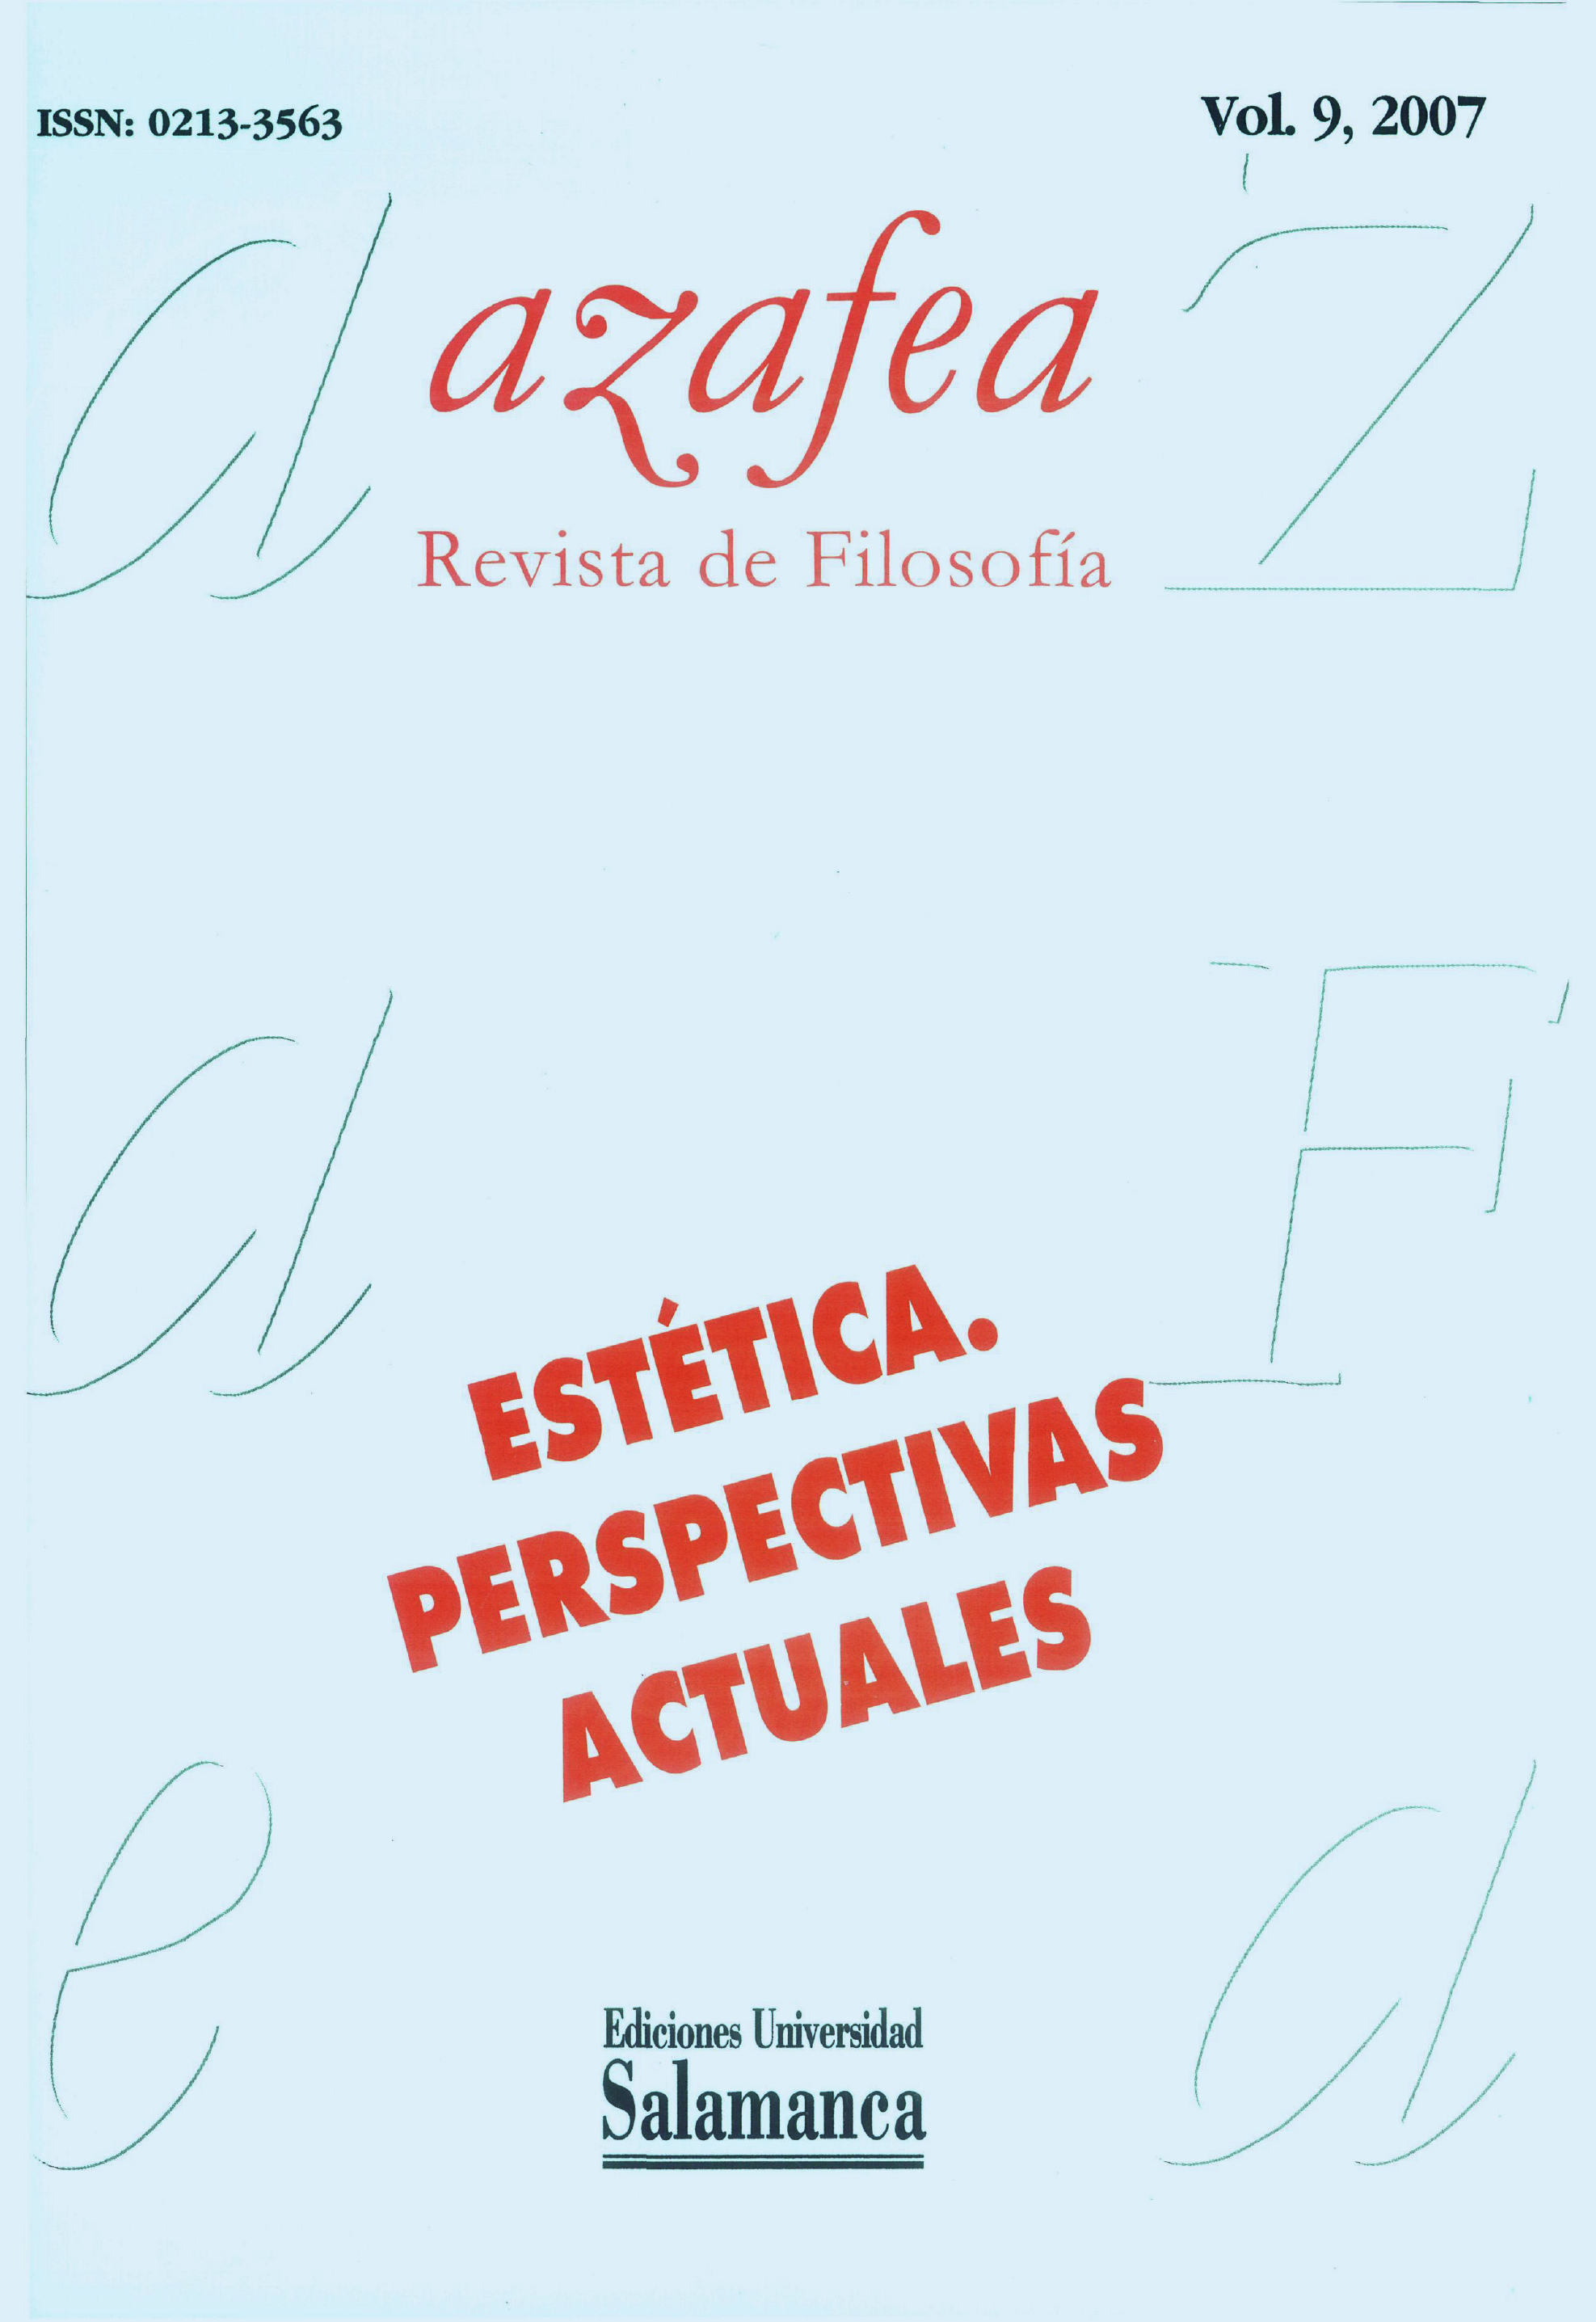                         Ver Vol. 9 (2007): Estética. Perspectivas actuales
                    